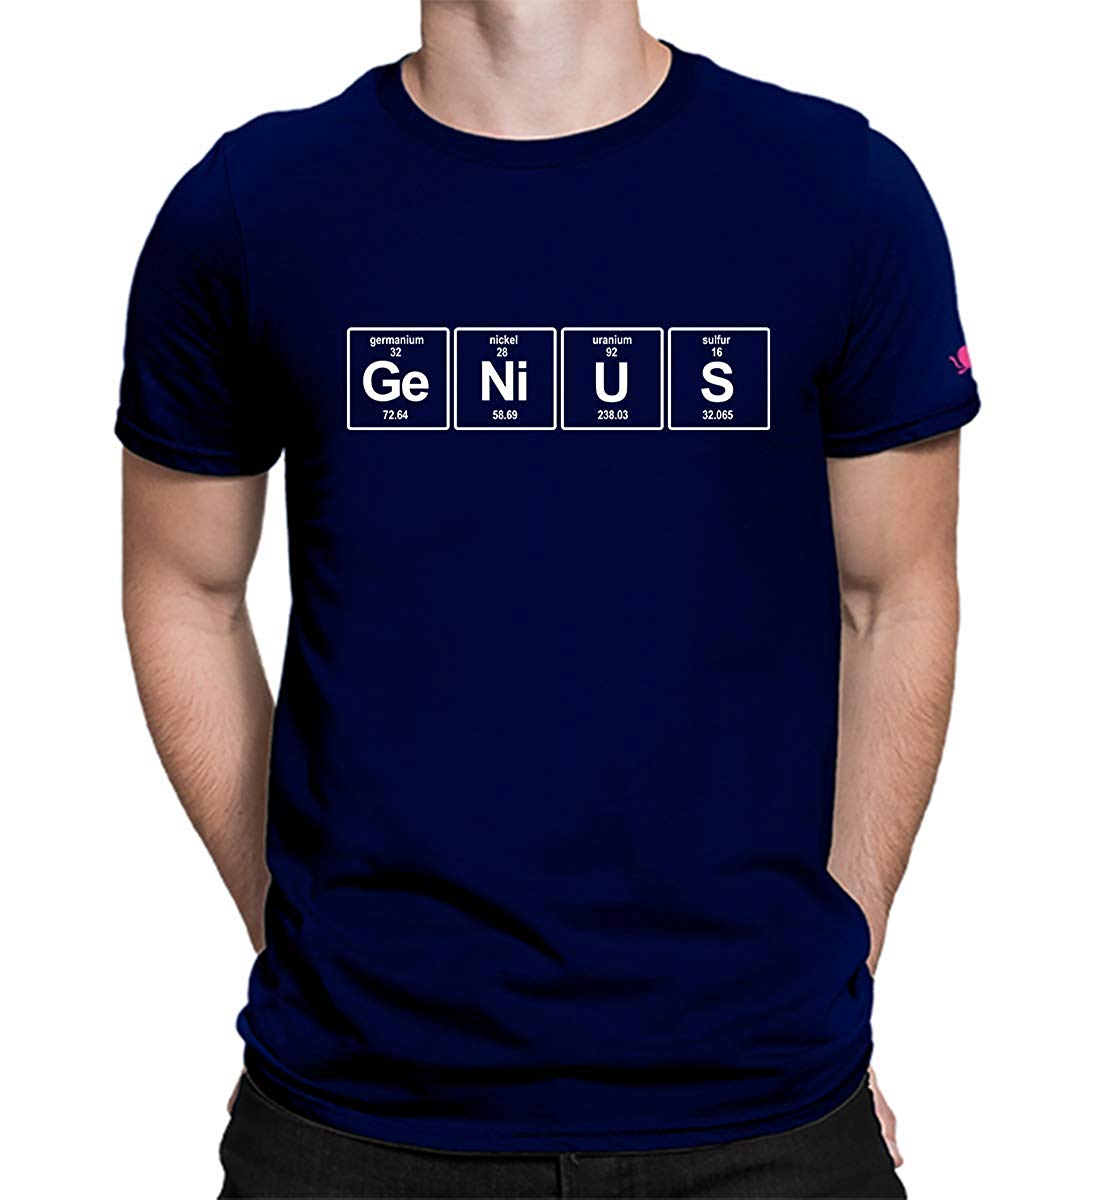 graphic-printed-t-shirt-for-men-genius-t-shirt